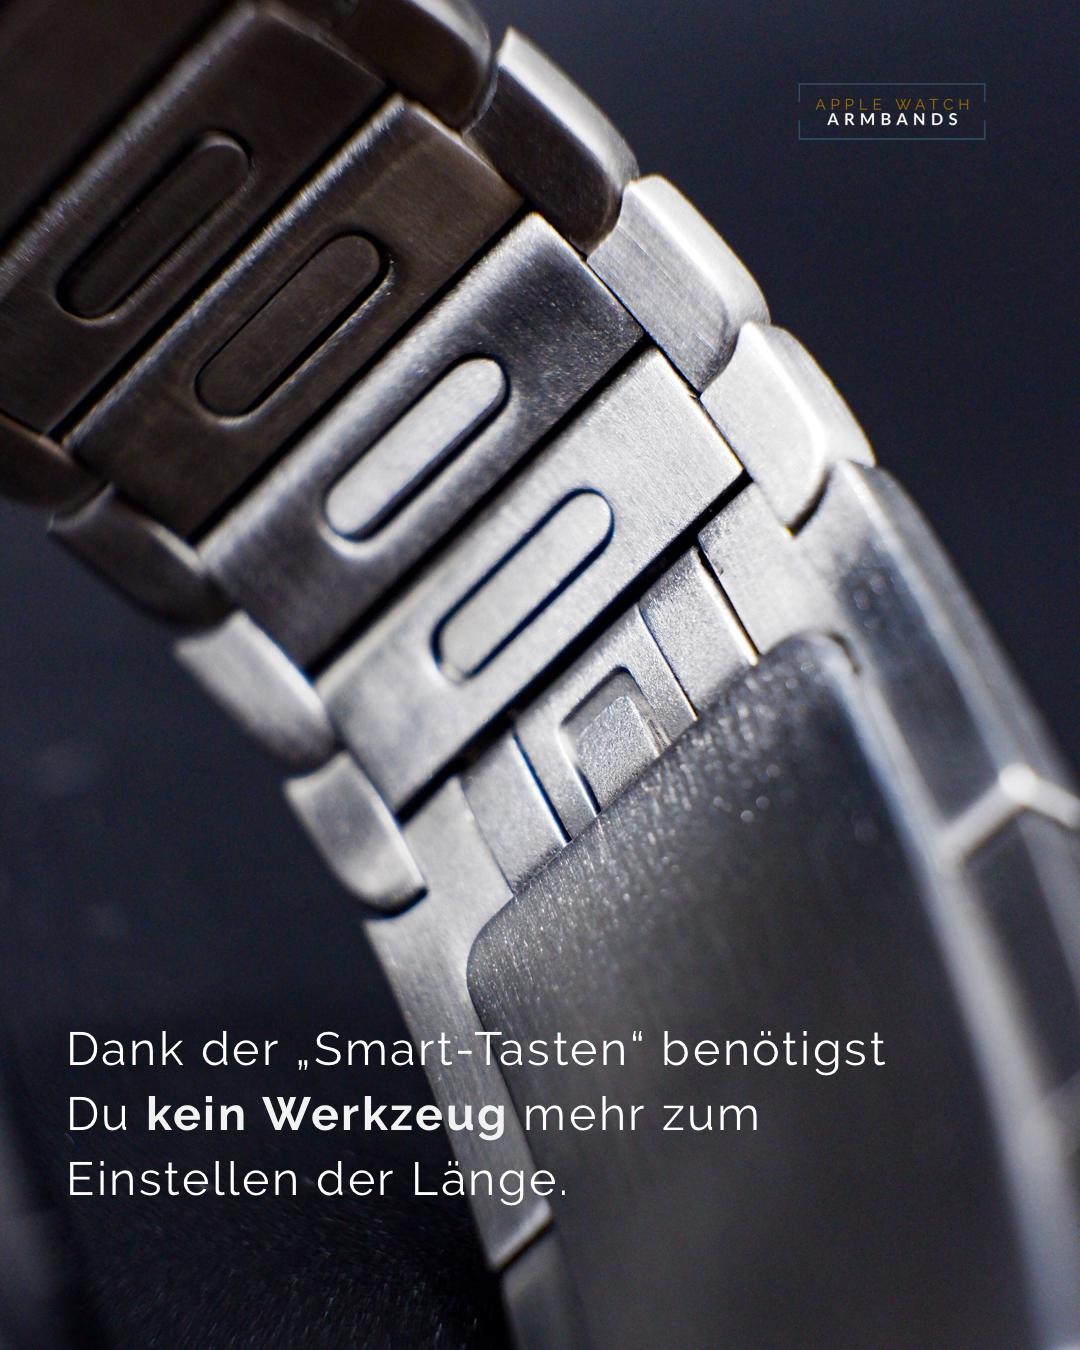 Space Schwarz - Edelstahl Gen. 6 | Gliederarmband für Apple Watch-Apple Watch Armbänder kaufen